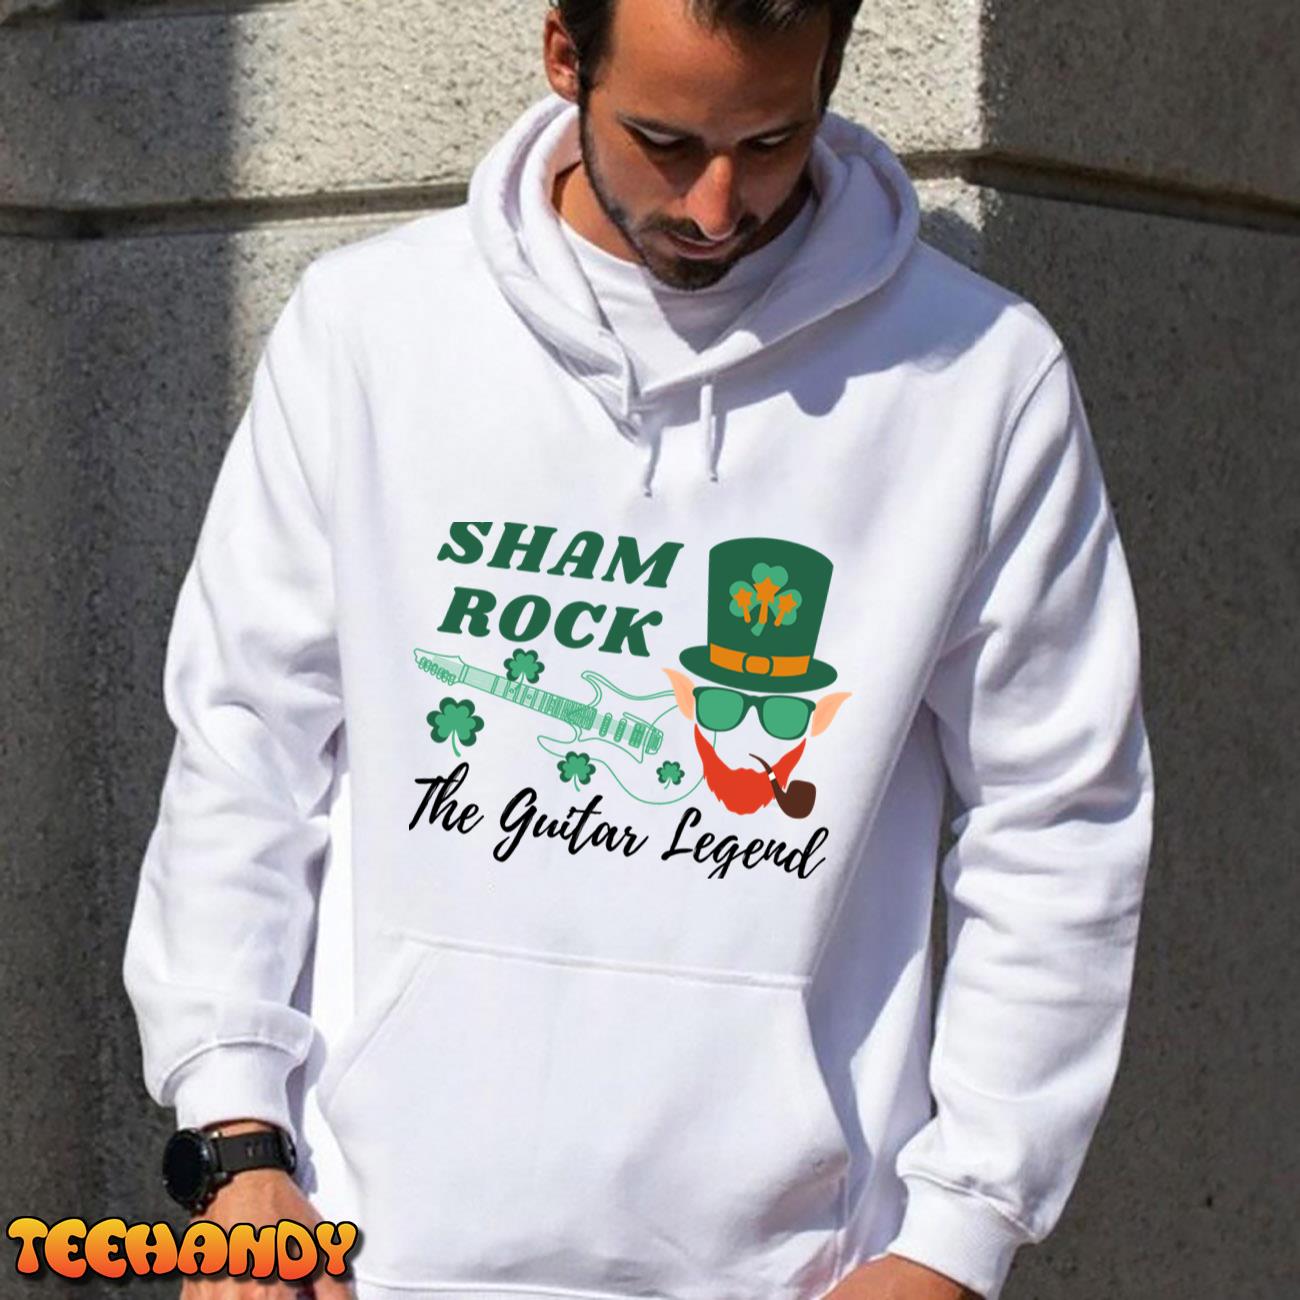 SHAM ROCK The Guitar Legend T-Shirt